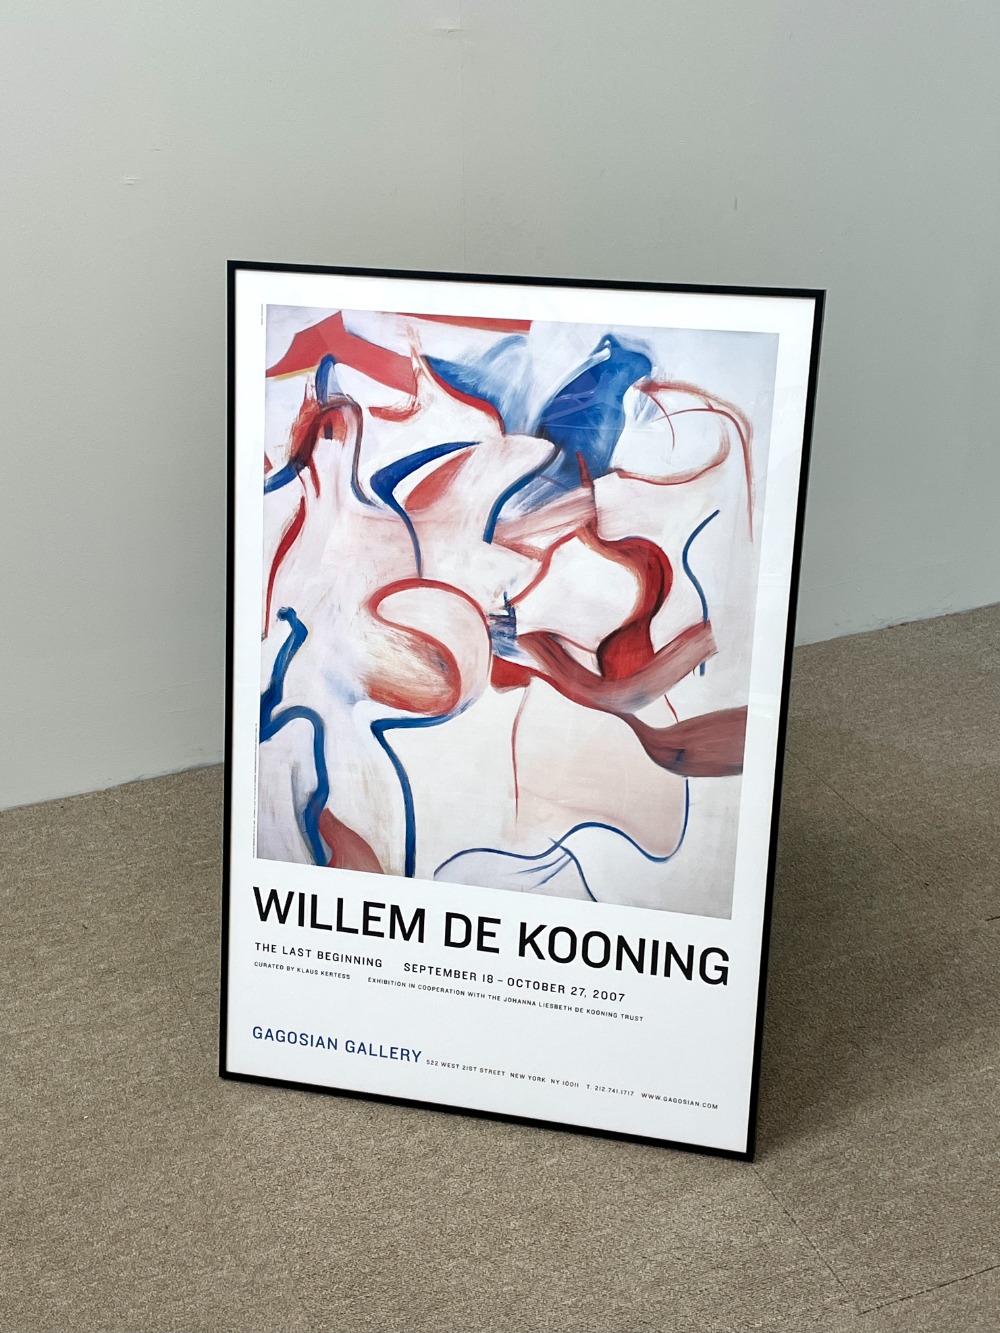 Willem de kooning - The Last Beginning